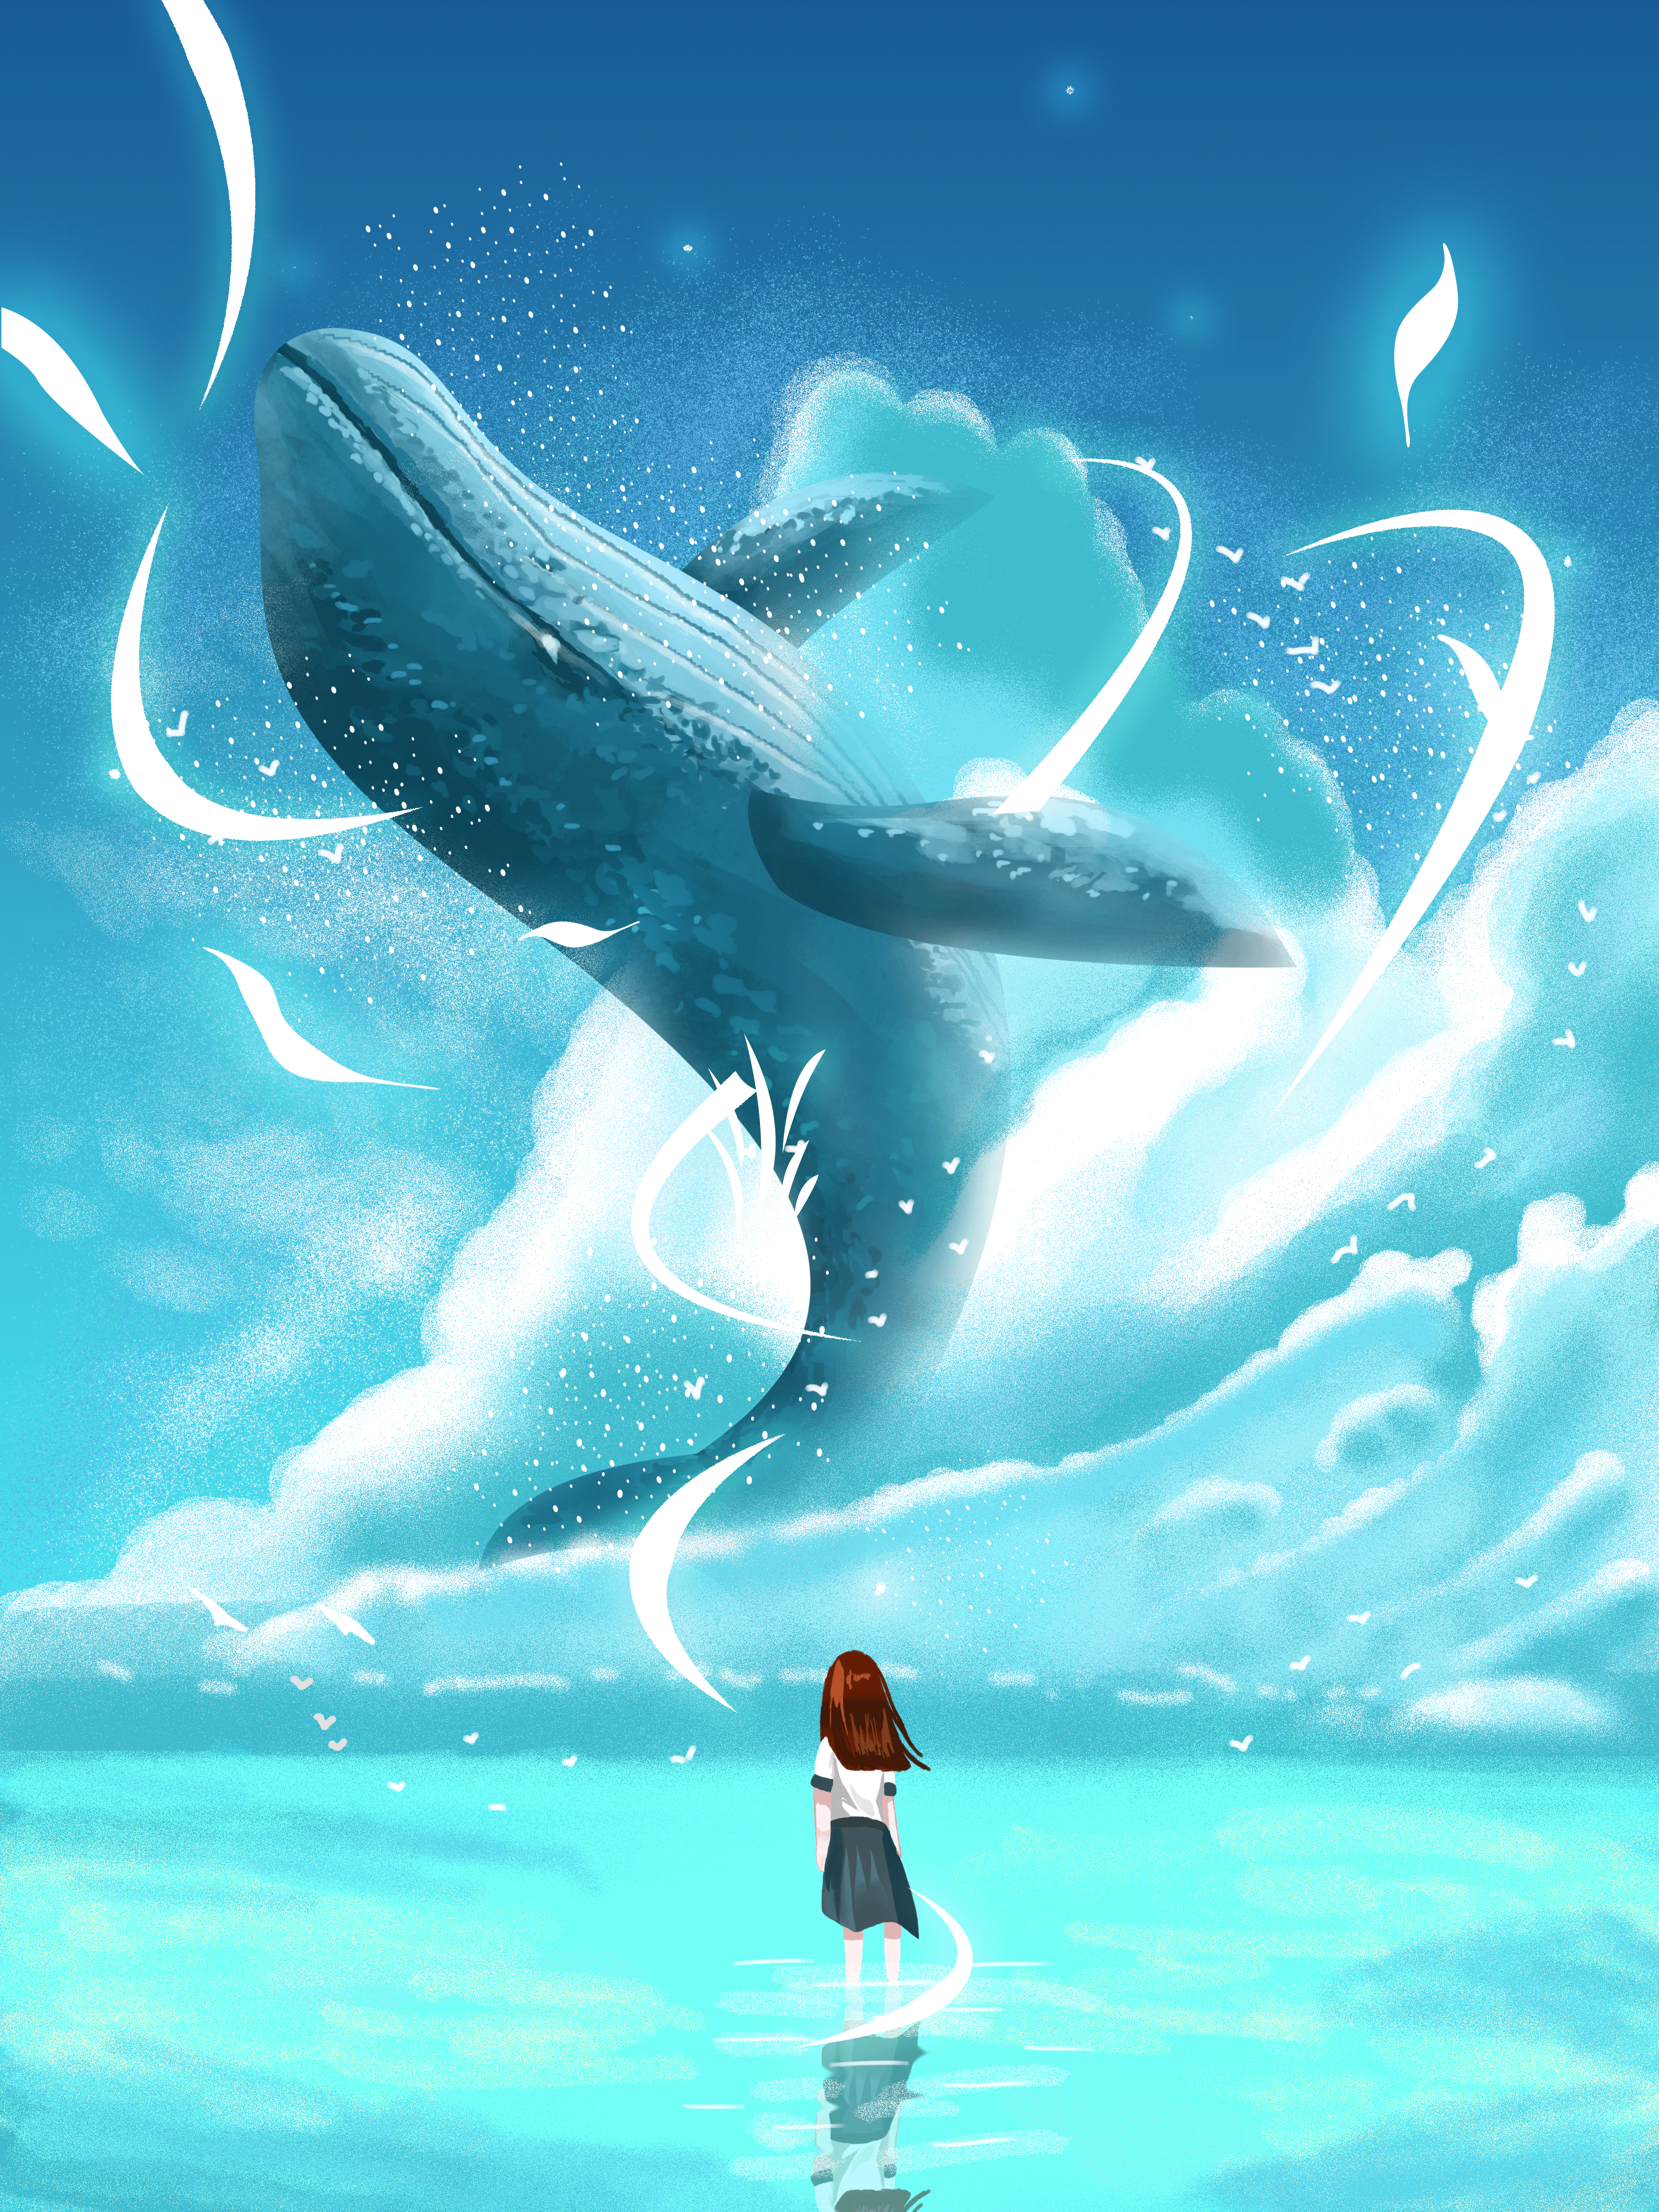 鲸鱼与女孩